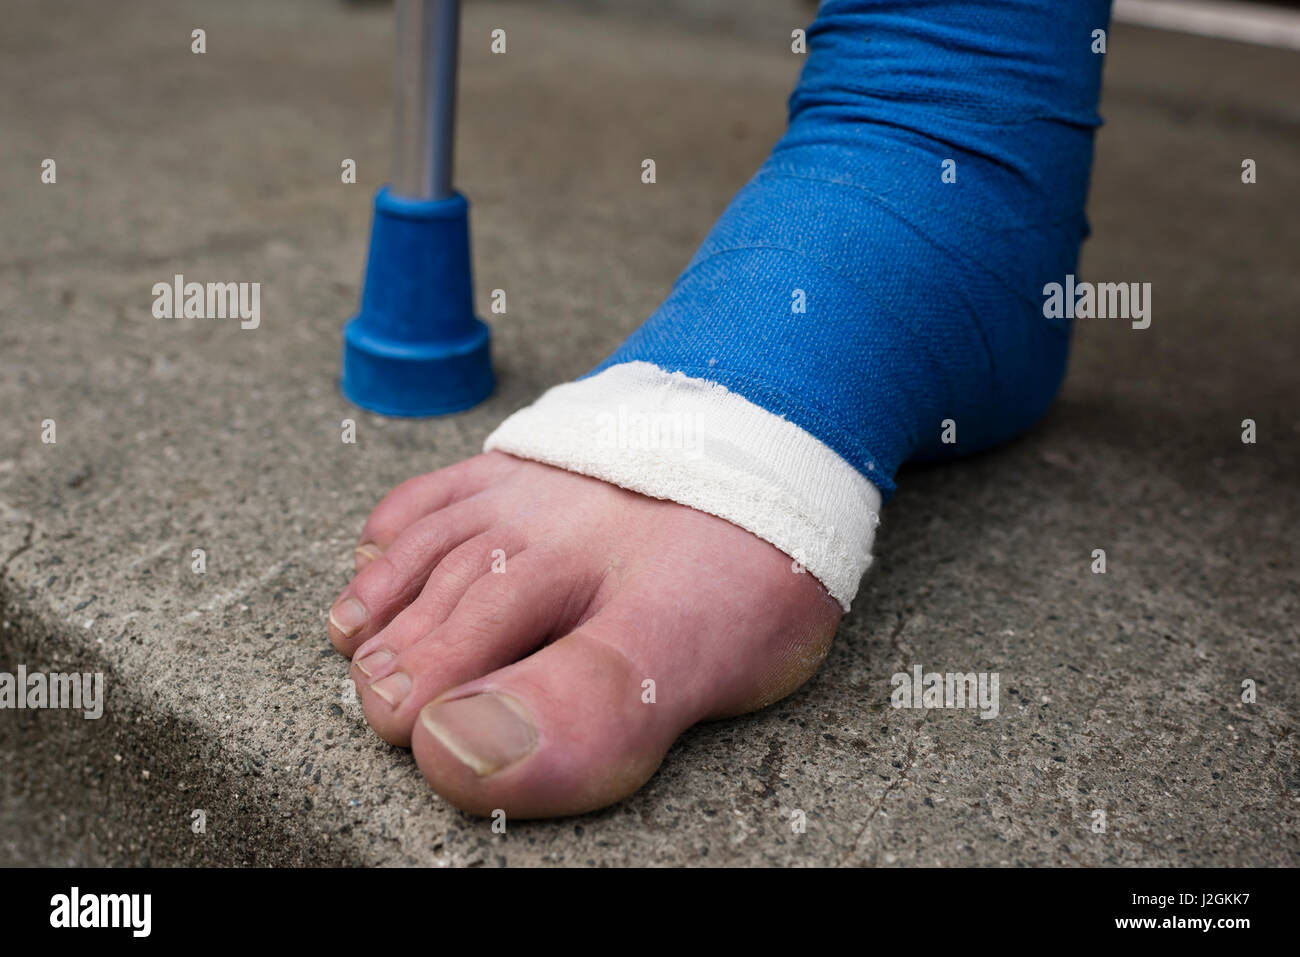 Dettaglio del piede bendato in gesso in pietra porta al di fuori di un appartamento. A piedi nudi le dita dei piedi sono fuori di fasciatura. Foto Stock